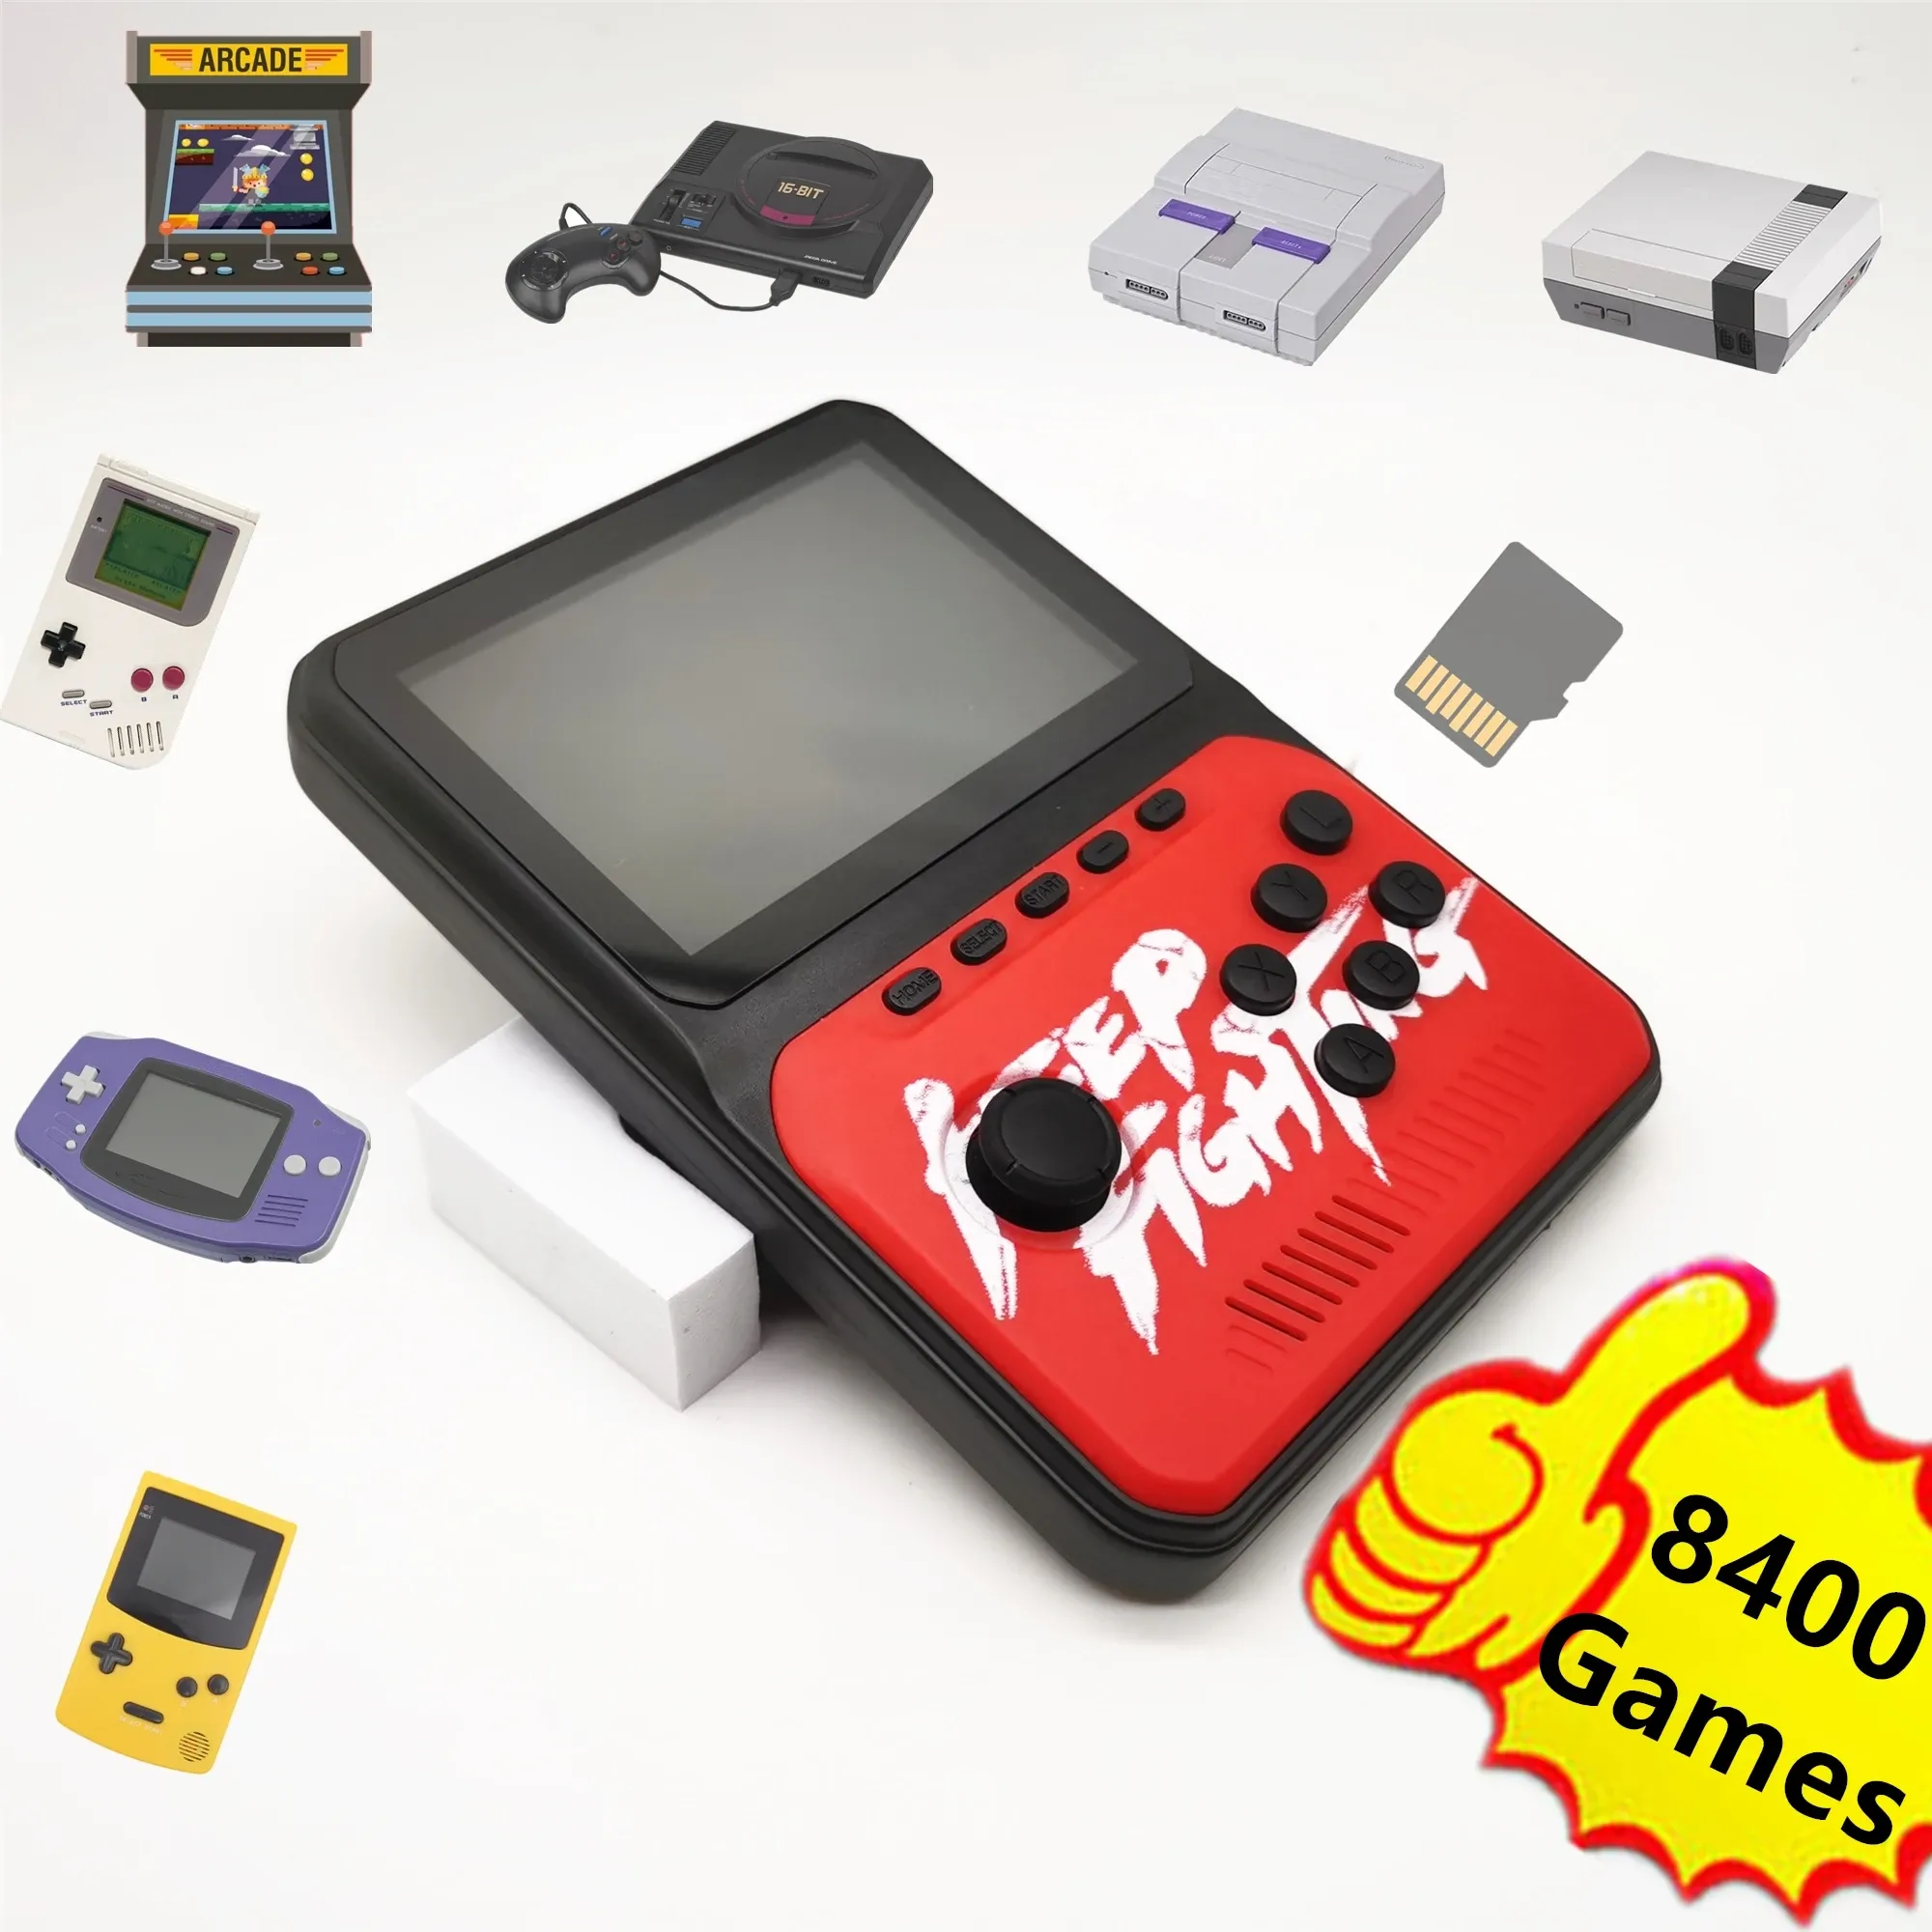 Spieler 8400 Spiele Retro Handheld-Spielekonsole Video-Player Musik-Player mit 7 Emulatoren für Genesis für Nes für Snes für GBA